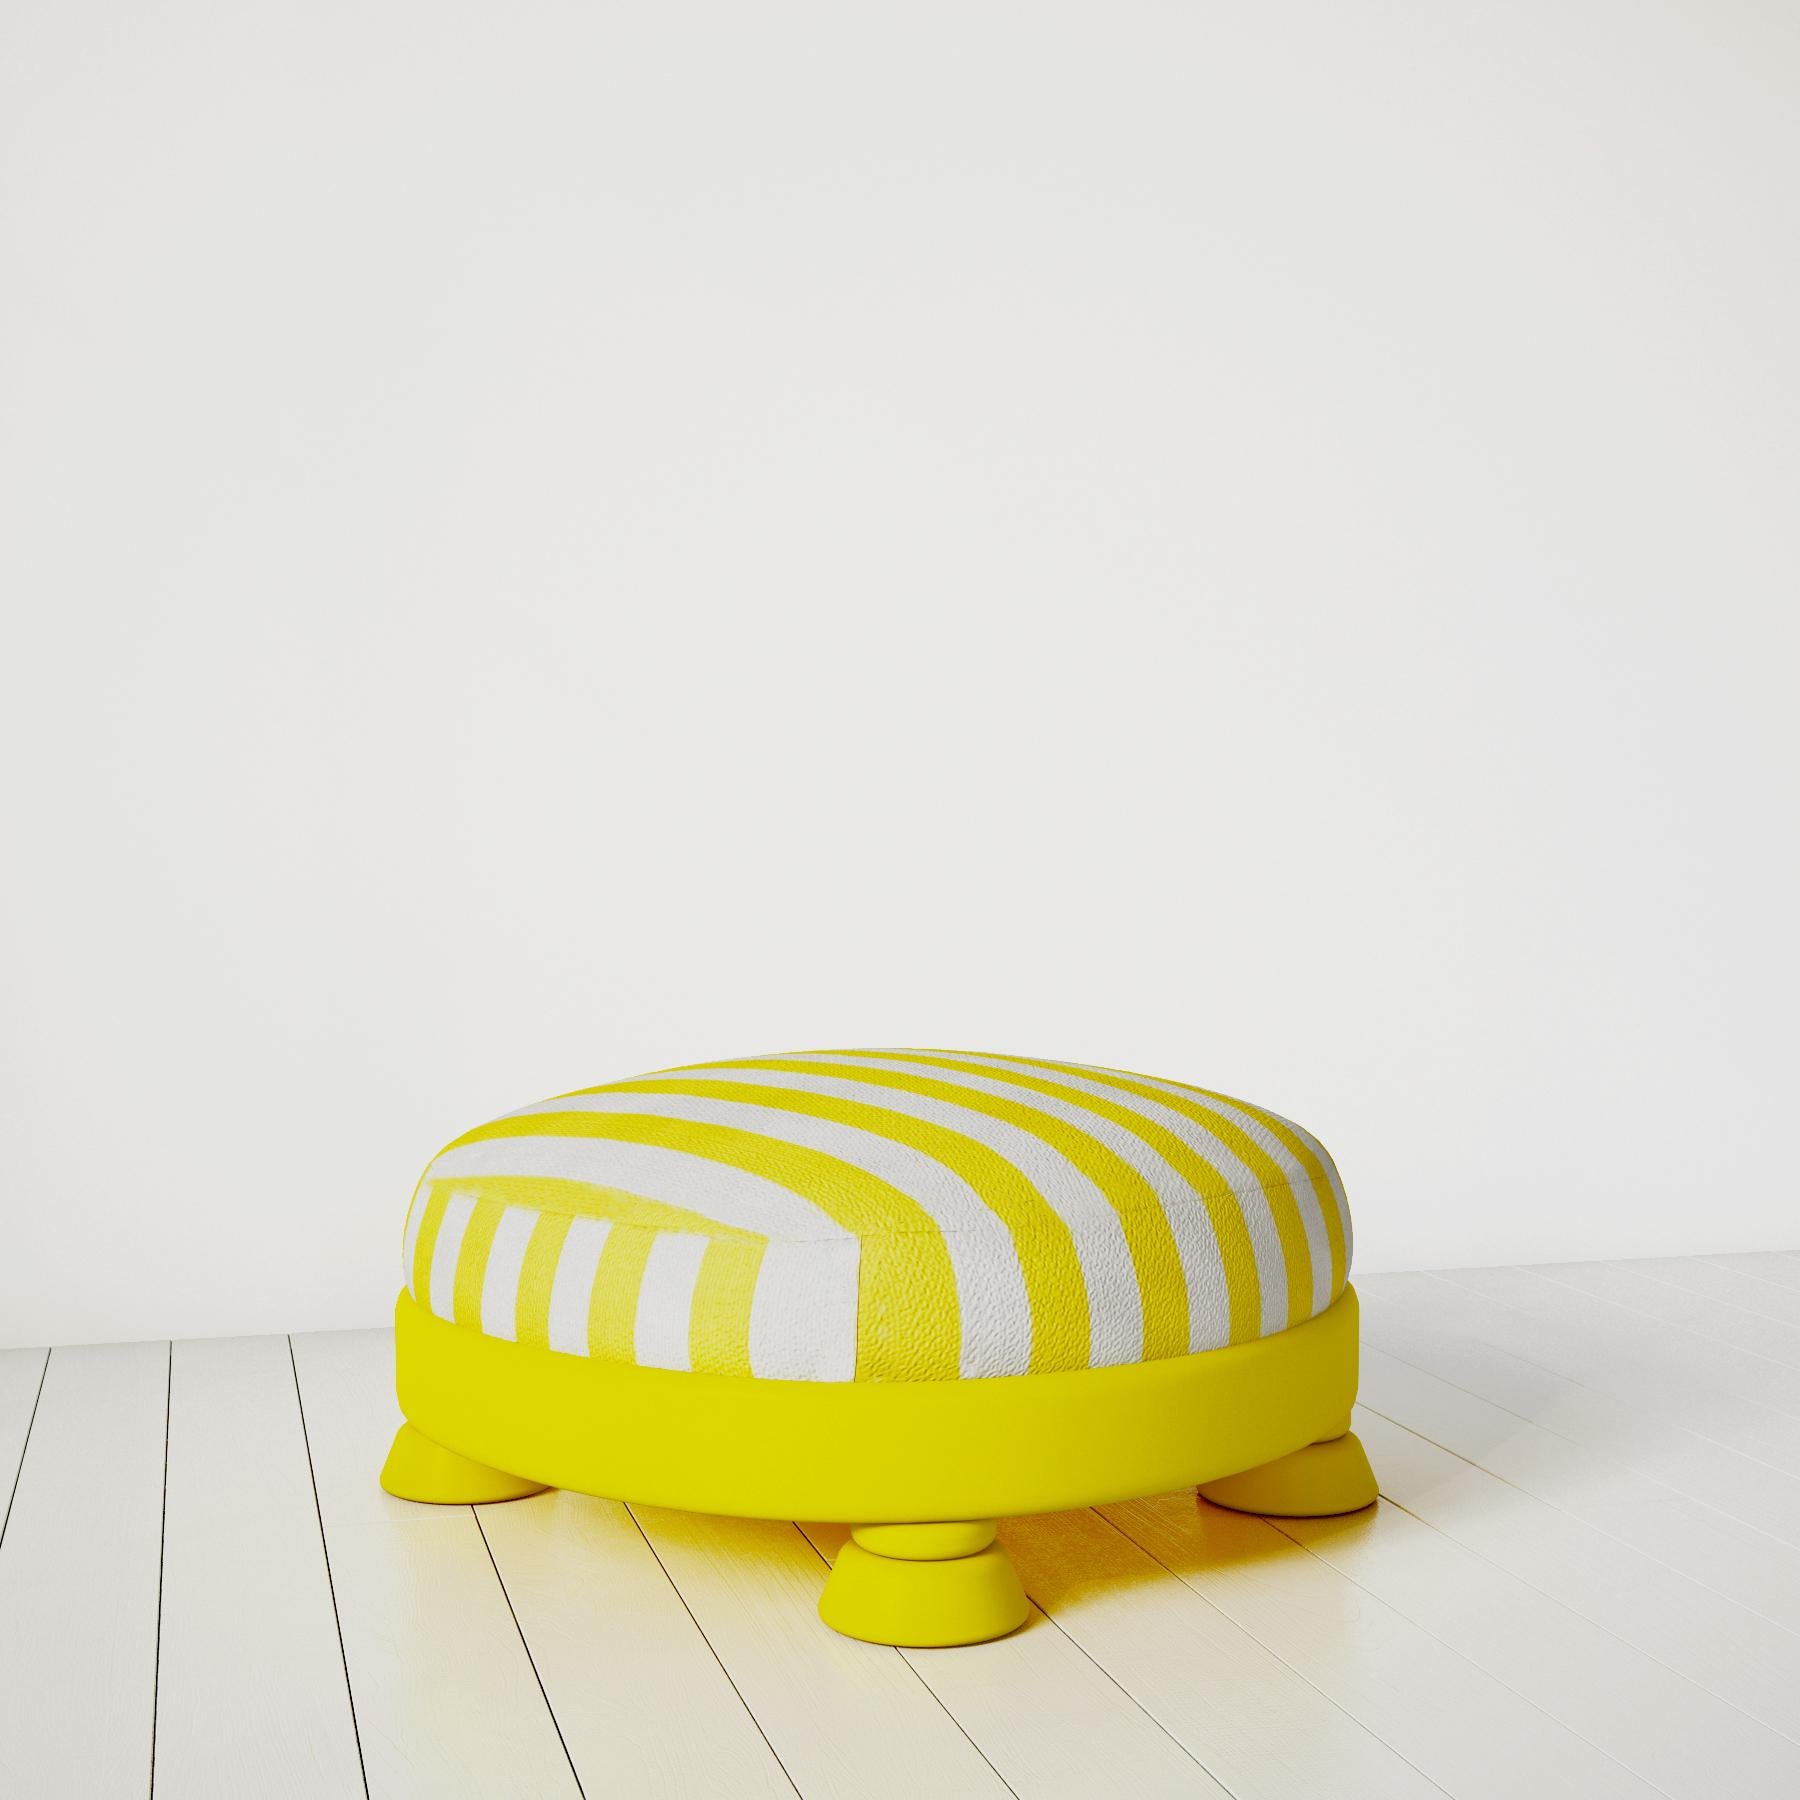 Vue d'ensemble :
Illuminez votre pièce avec le Pouf Yellow Mellow, un accessoire gai et élégant qui allie la fantaisie du design néoténique à la sophistication du style postmoderne. Ce pouf est parfait pour ajouter une touche de couleur et une